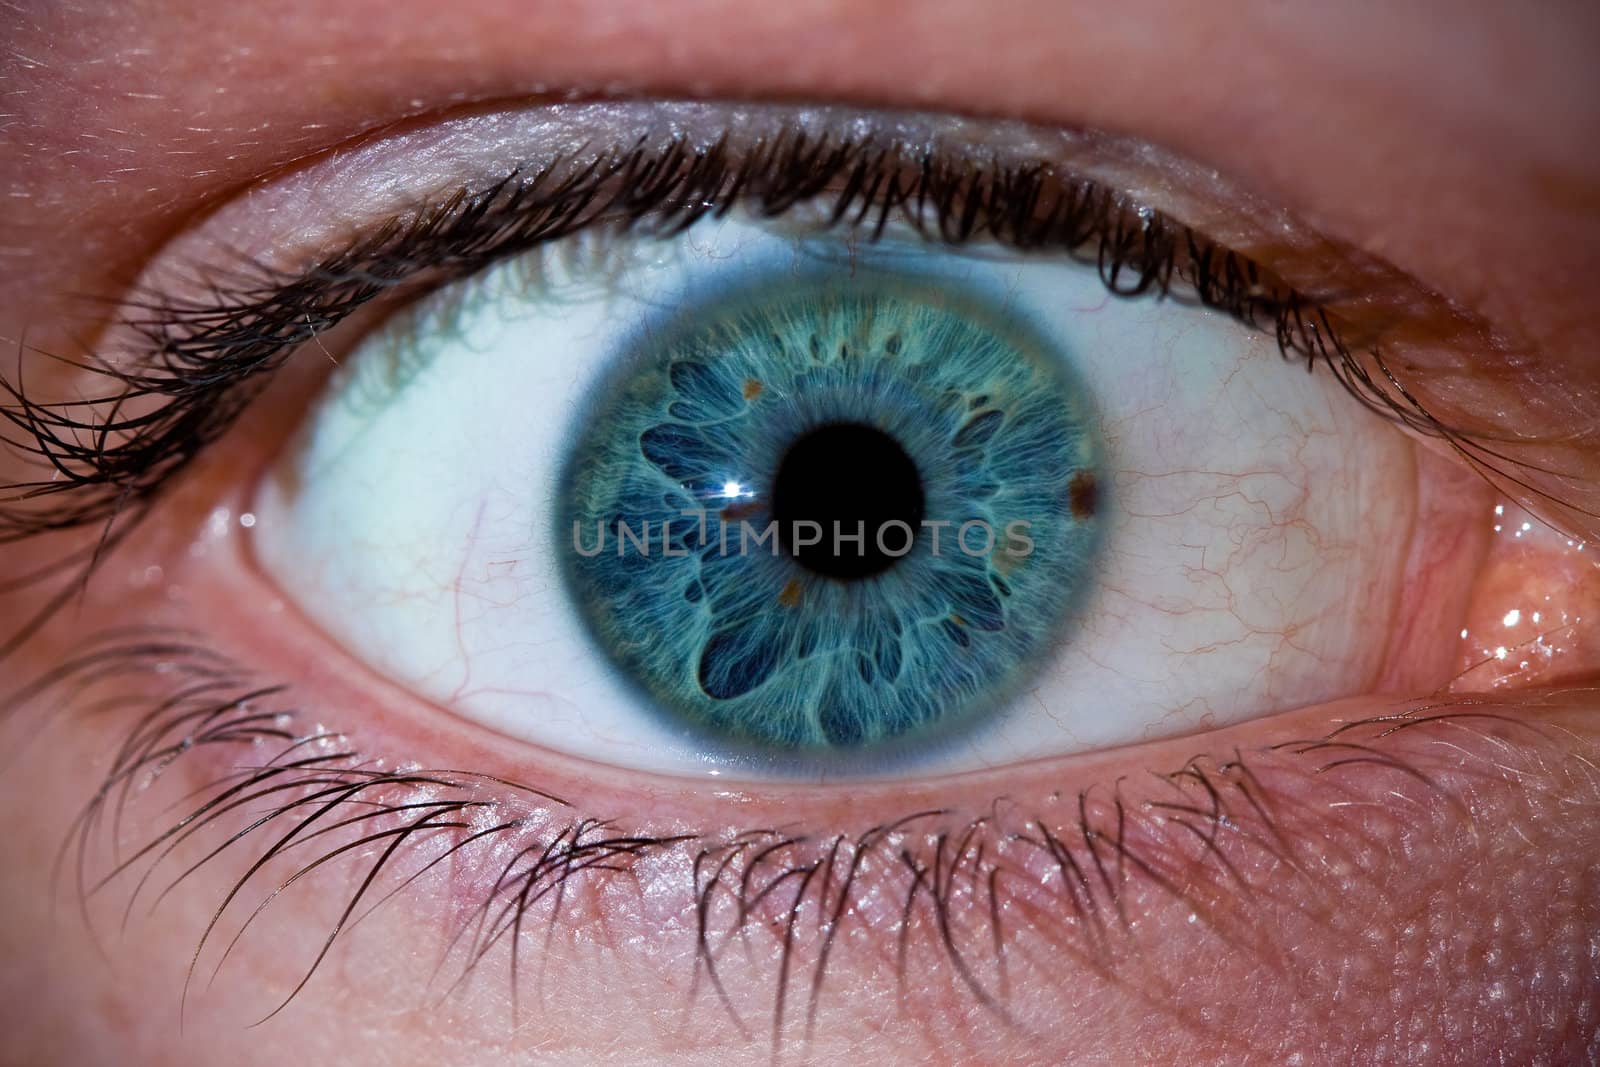 Eye by micahbowerbank